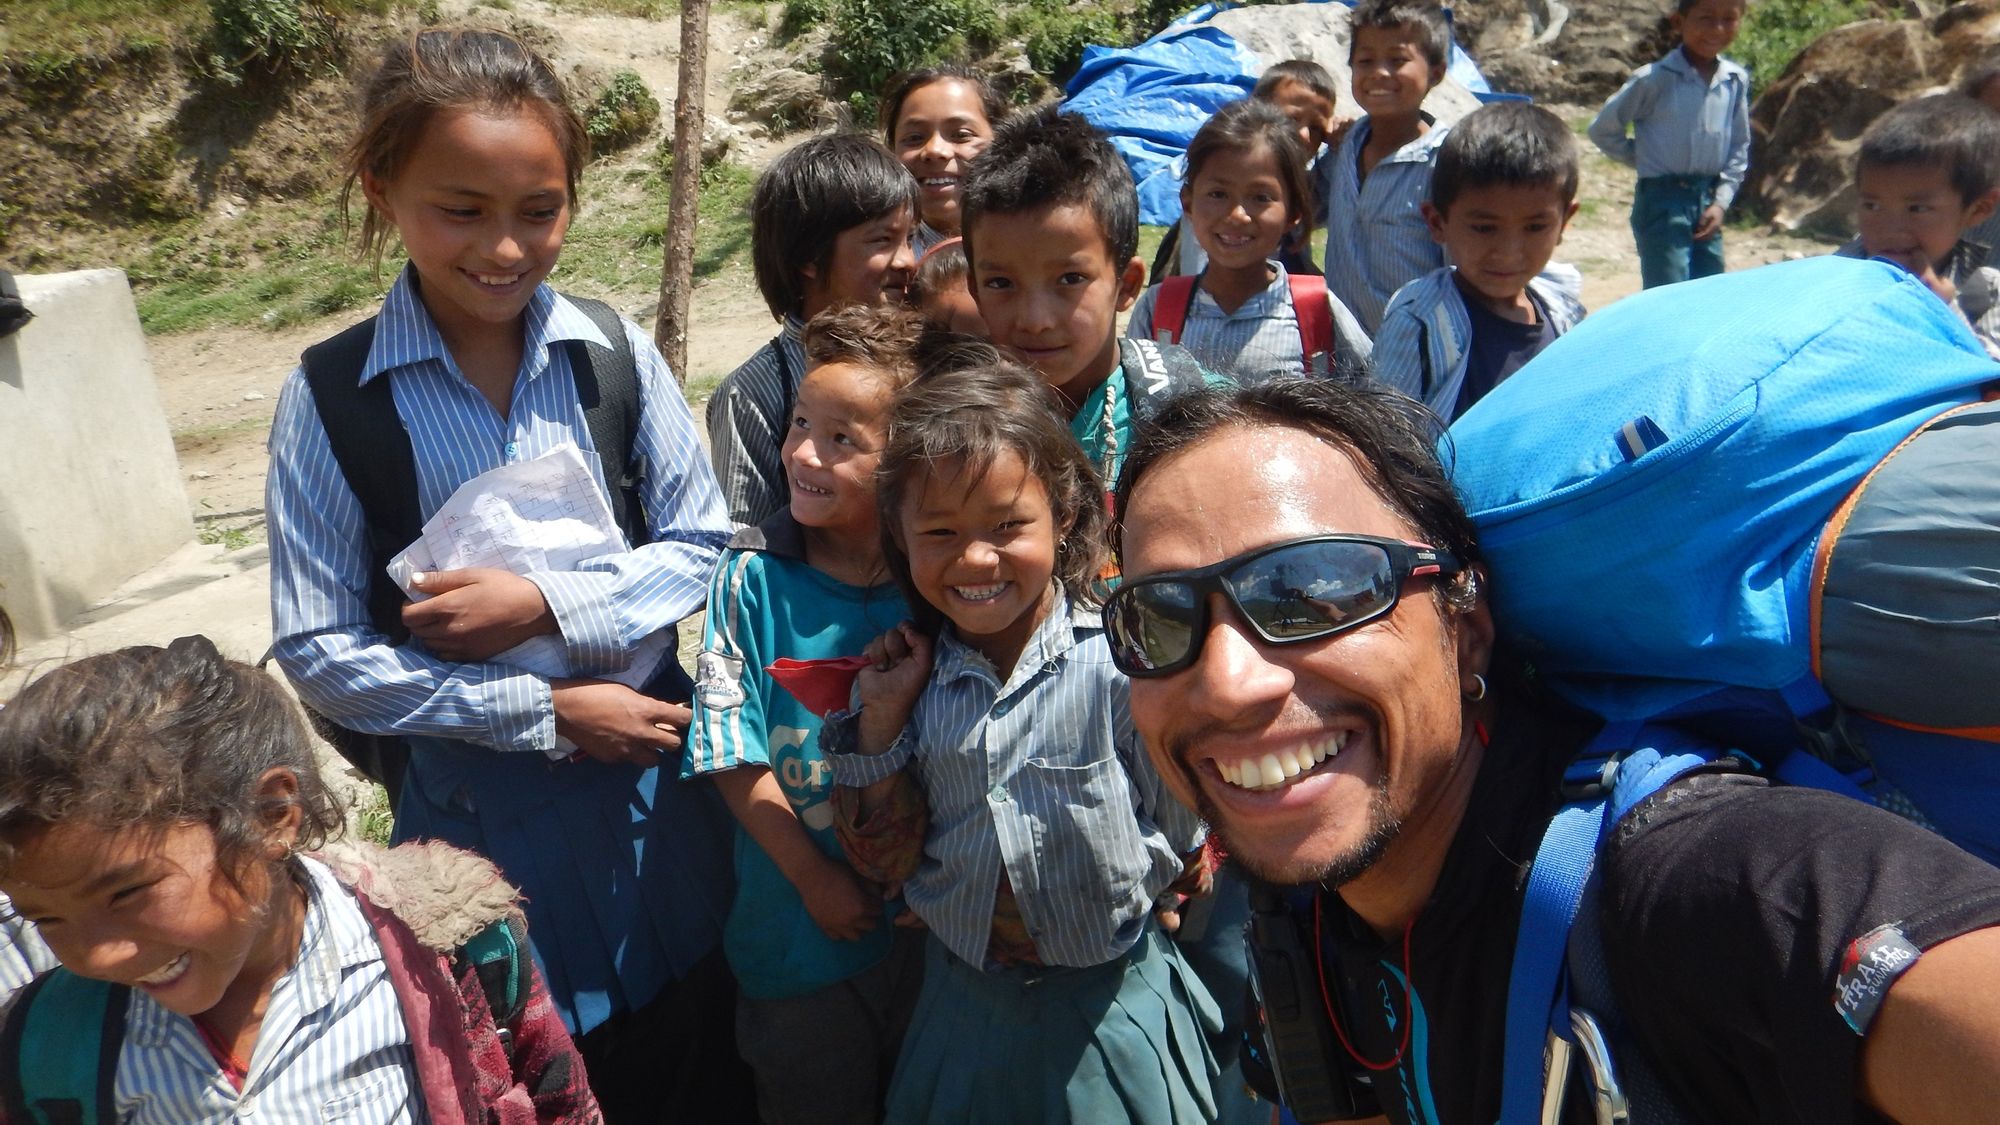 Children-Nepal